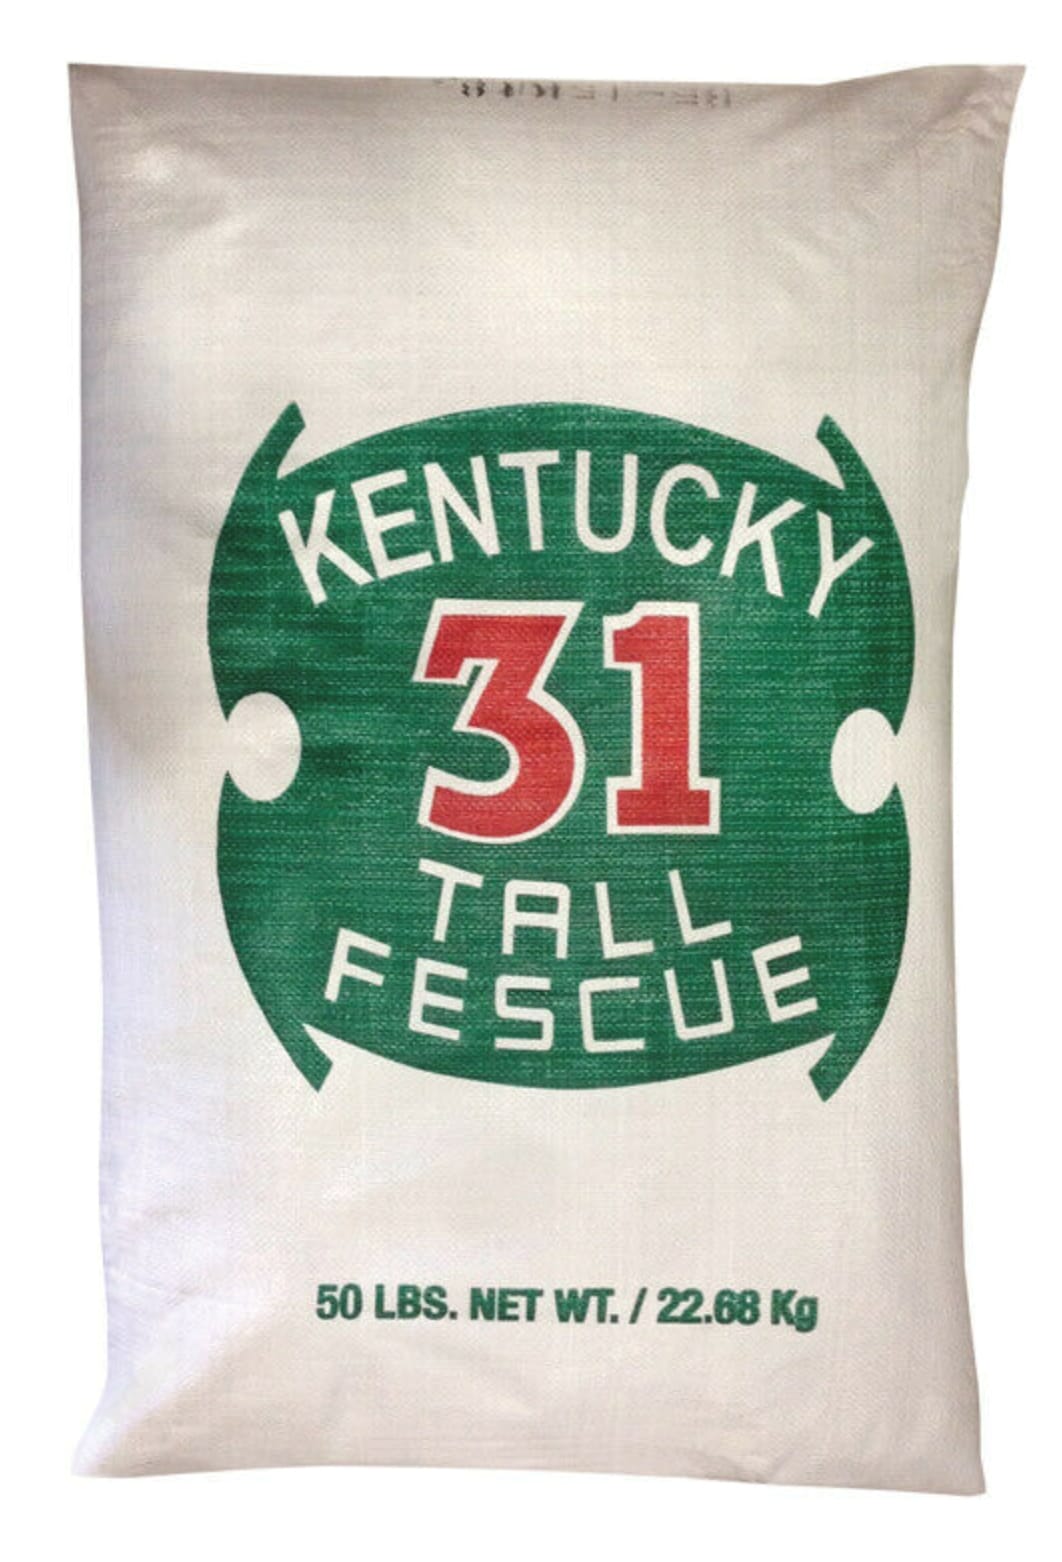 Kentucky 31 Grass Seed at